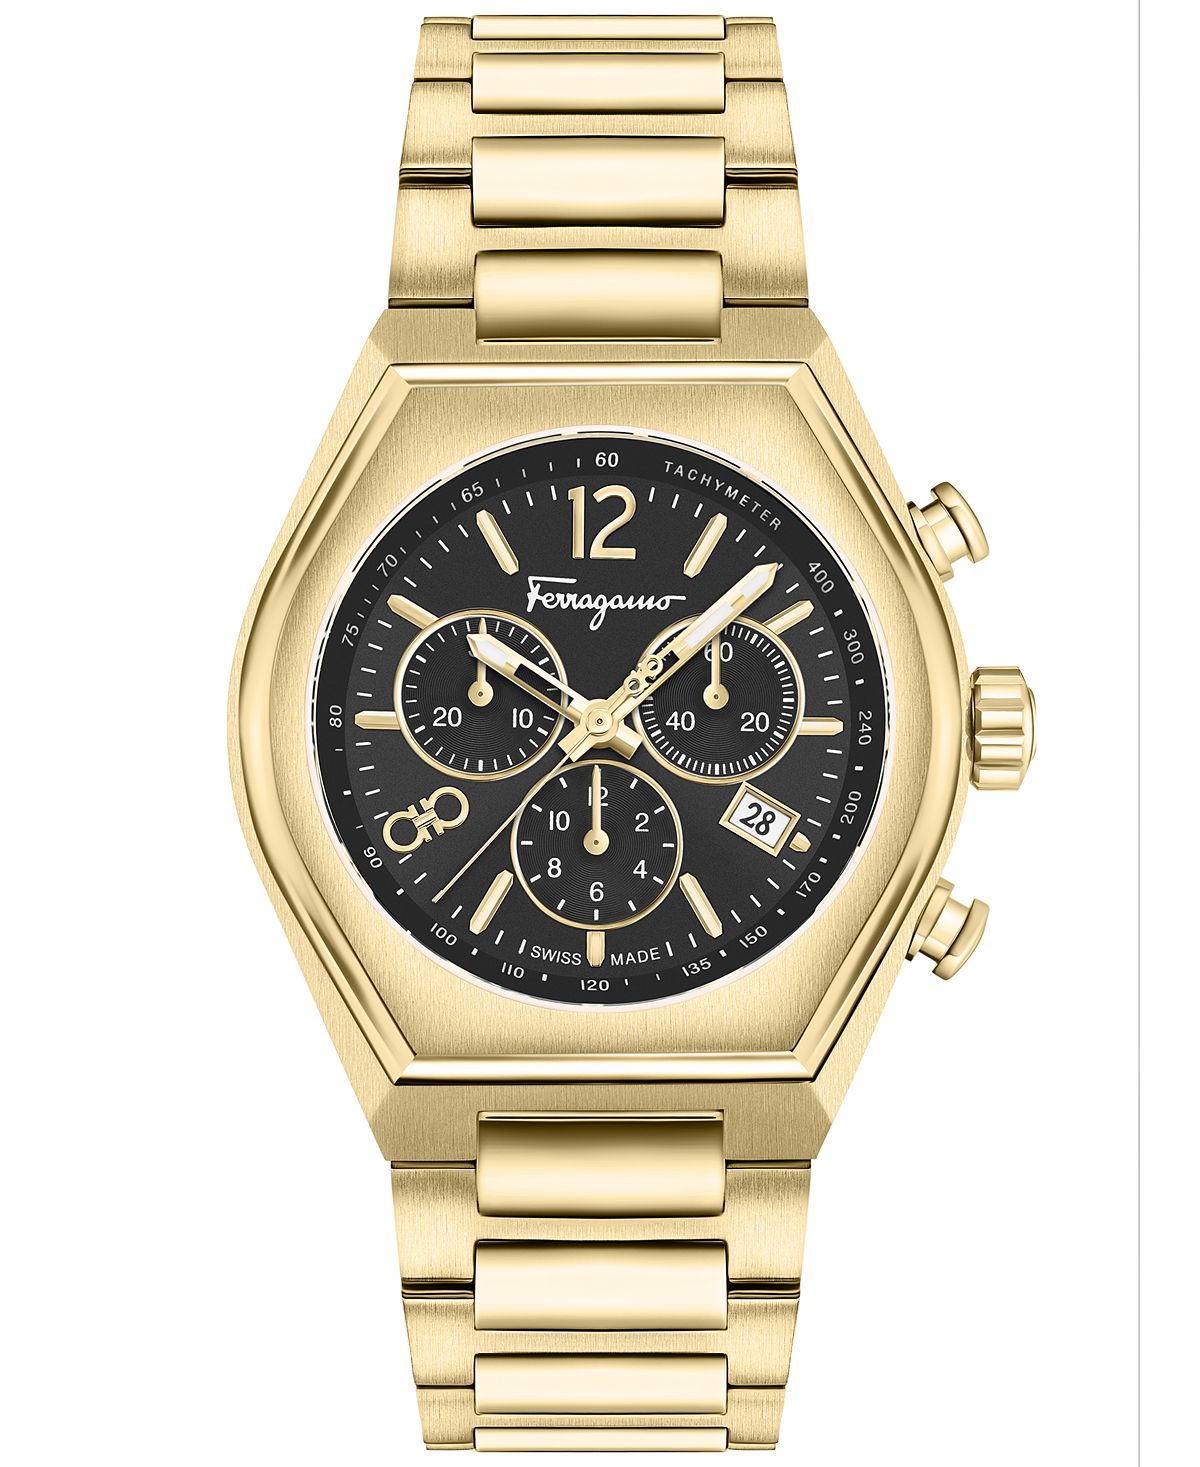 мужские швейцарские классические двухцветные часы браслет из нержавеющей стали 42 мм salvatore ferragamo Мужские швейцарские часы-хронограф Tonneau с позолоченным браслетом из нержавеющей стали, 42 мм Salvatore Ferragamo